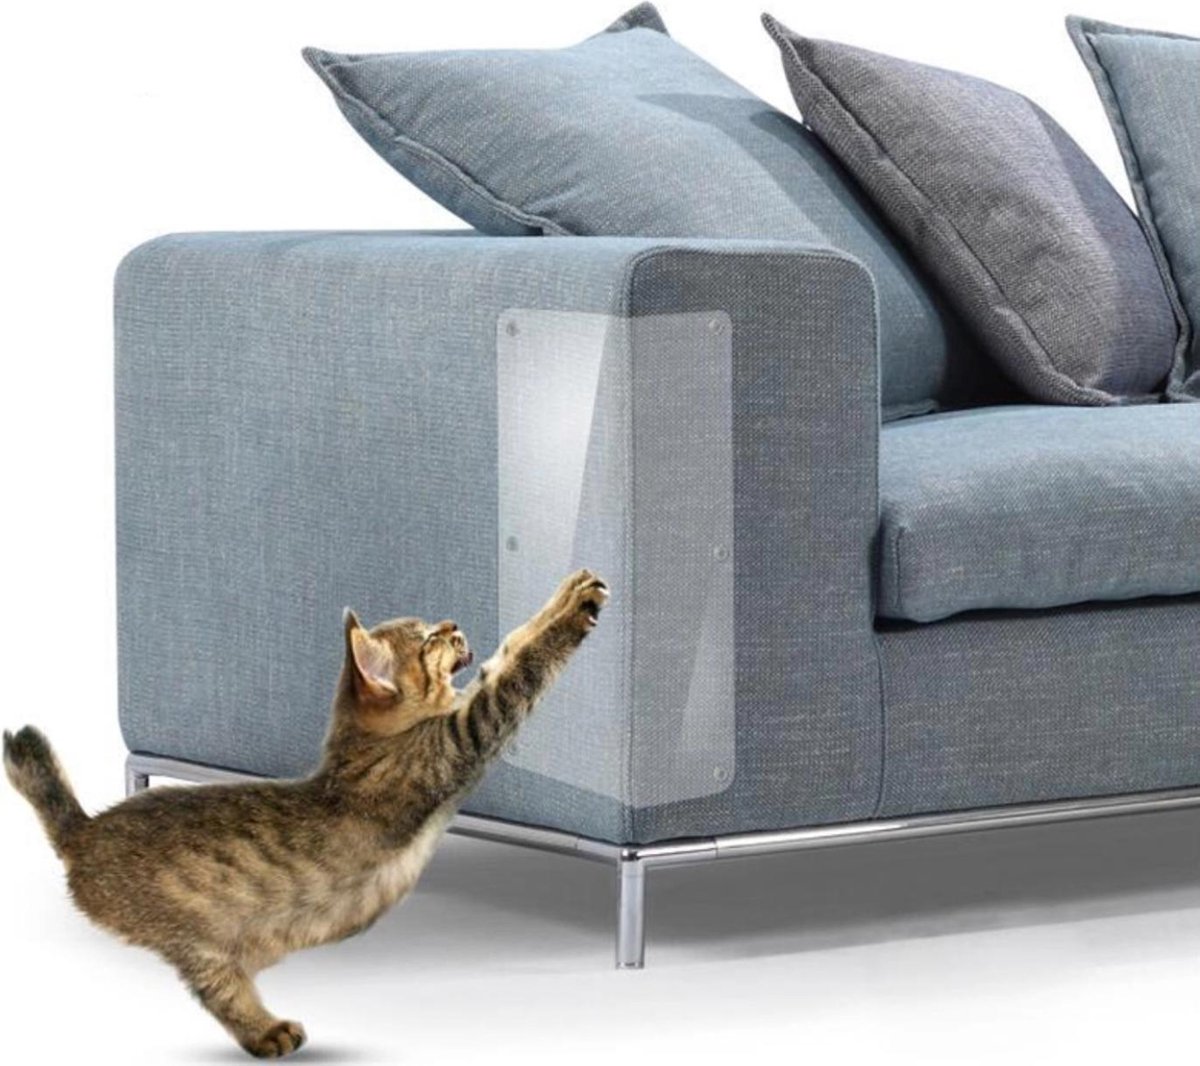 Bescherming tegen krab schade van katten - 2 stuks - konijnen - honden - meubel bescherming - cat scratchers - furniture - couch protector - katten nagels - huisdieren veiligheid - meubel - interieur